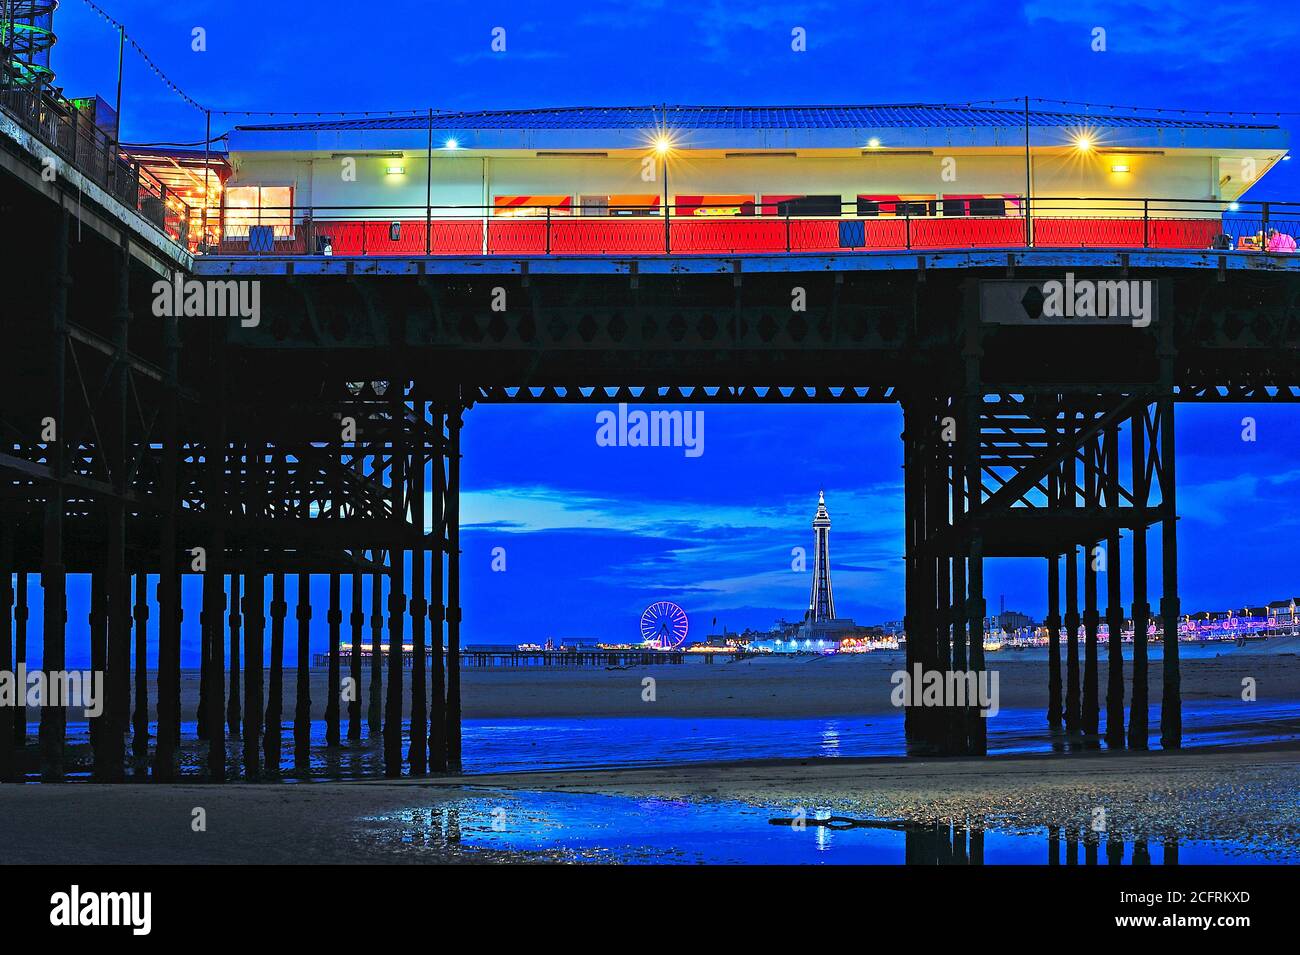 Central Pier et Blackpool Tower vus de sous South Pier la nuit pendant les illuminations Banque D'Images